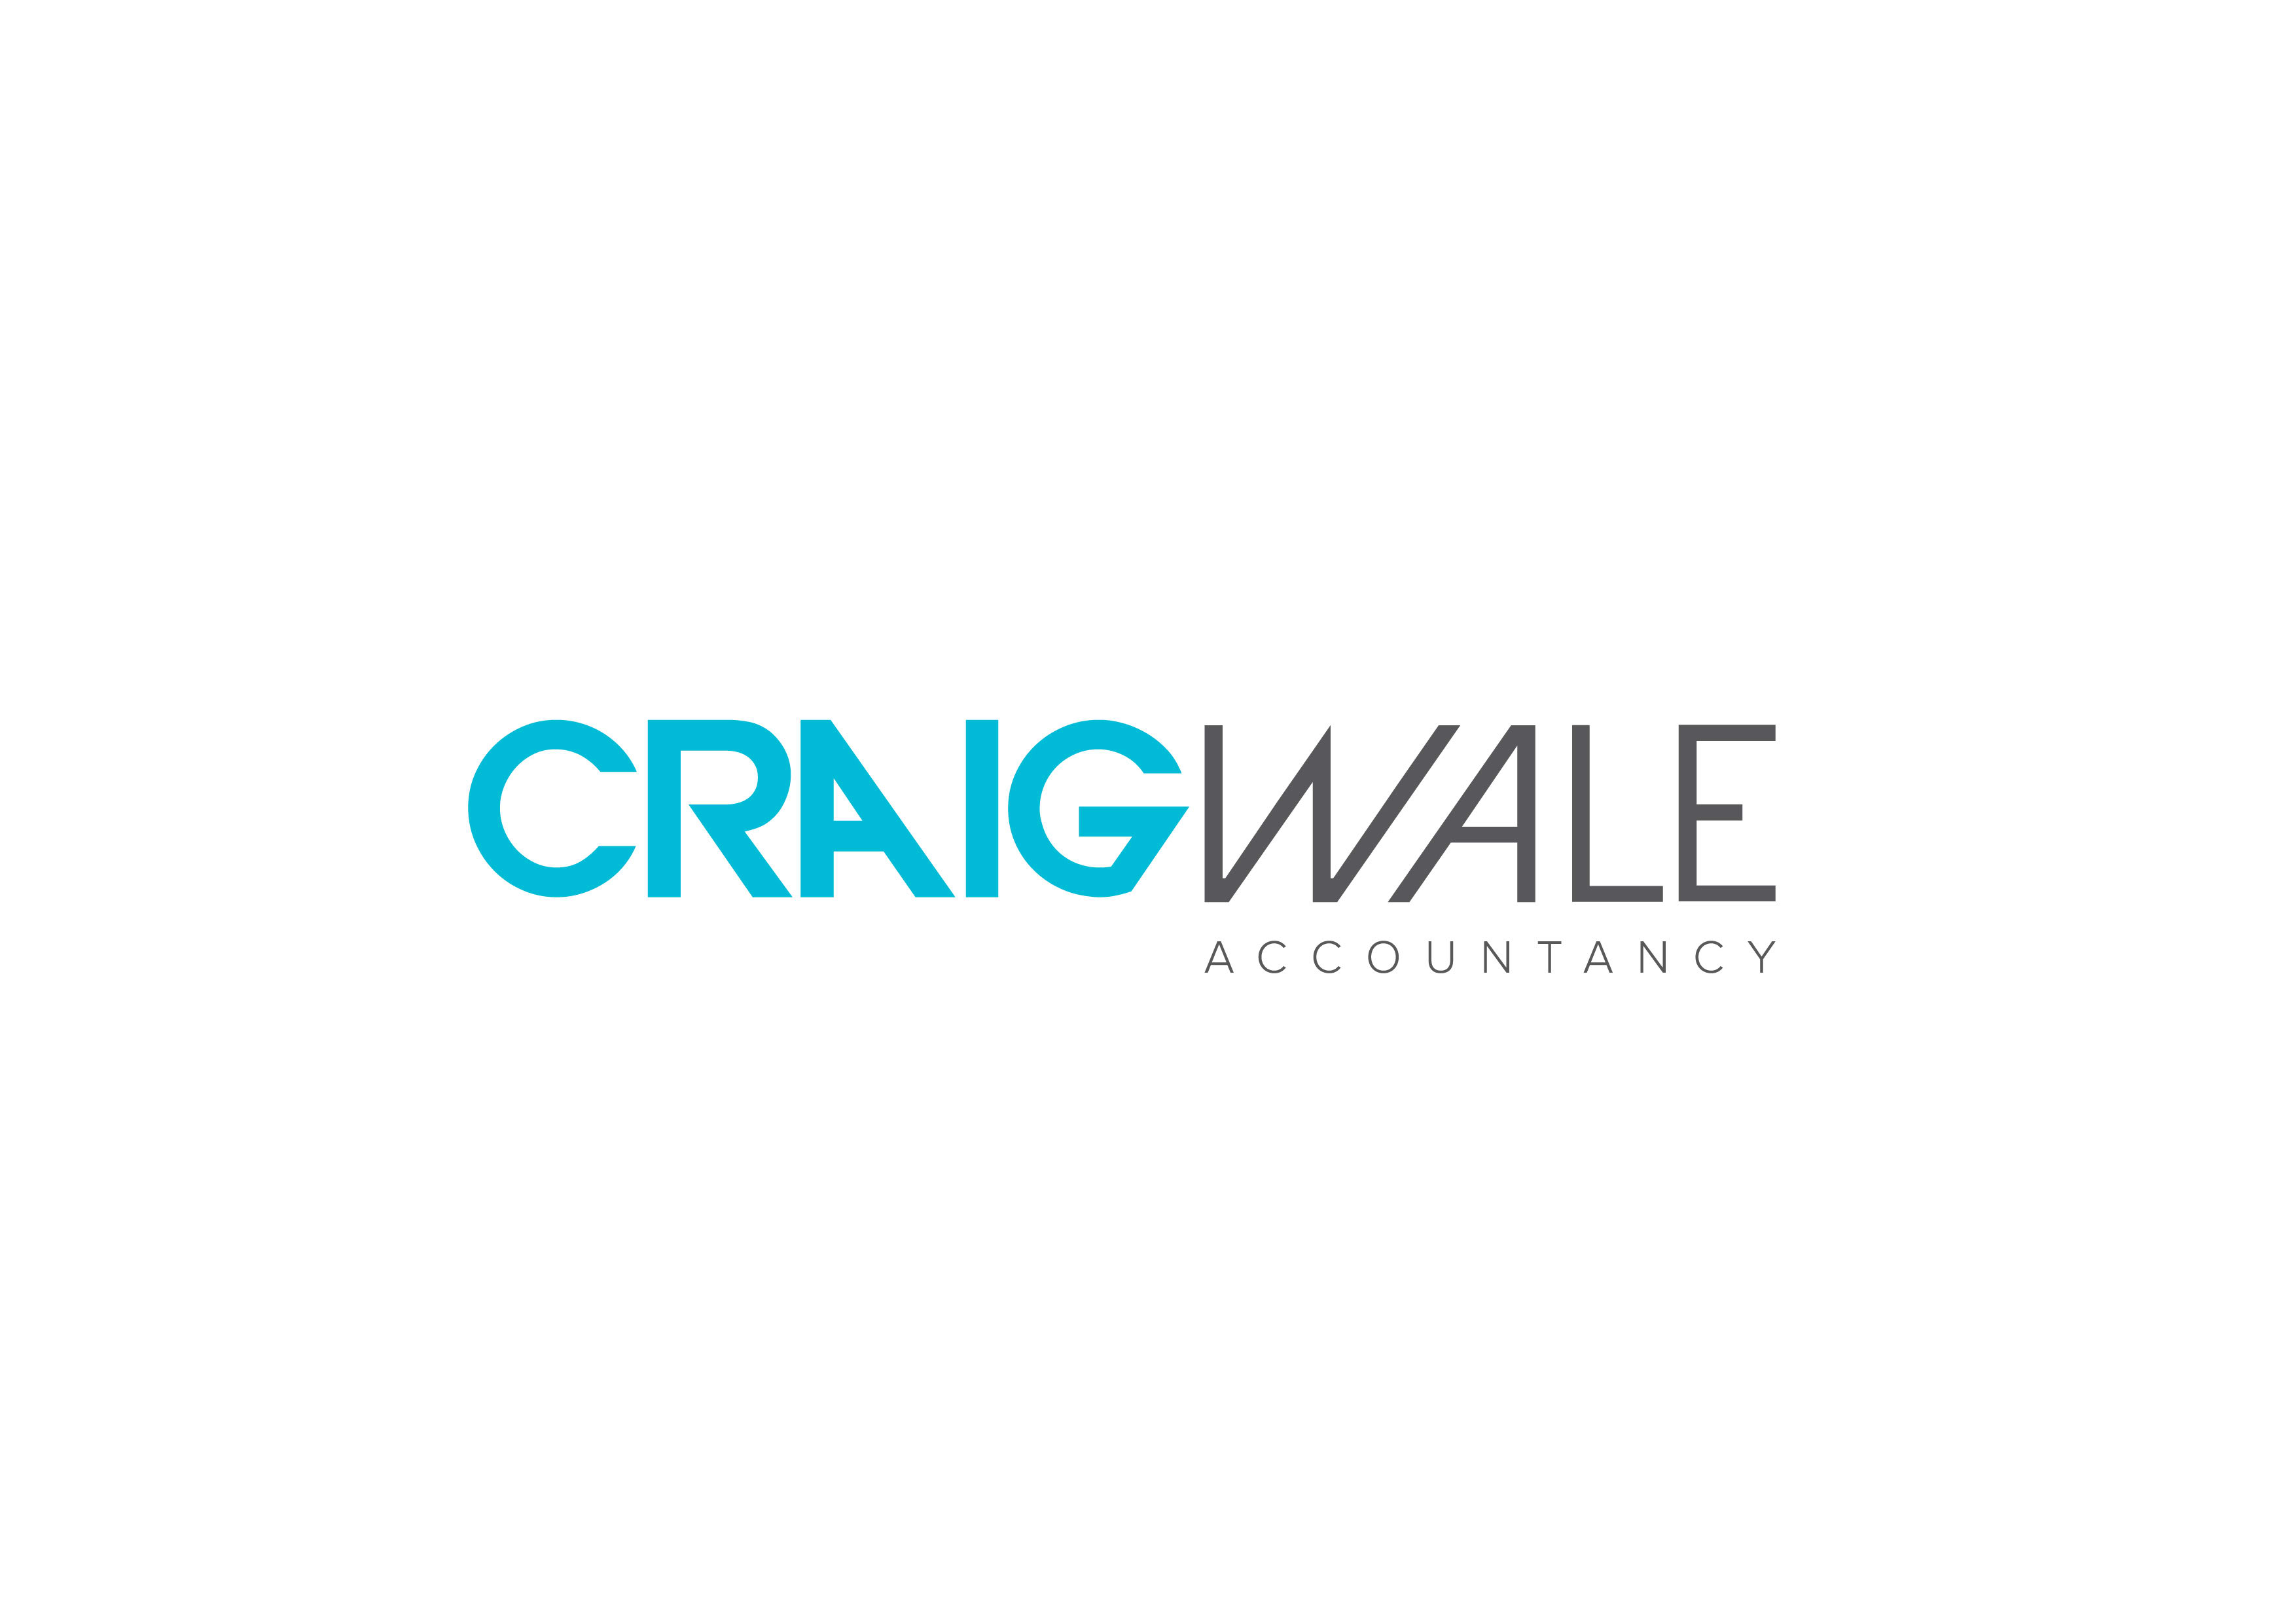 Craig Wale Accounts